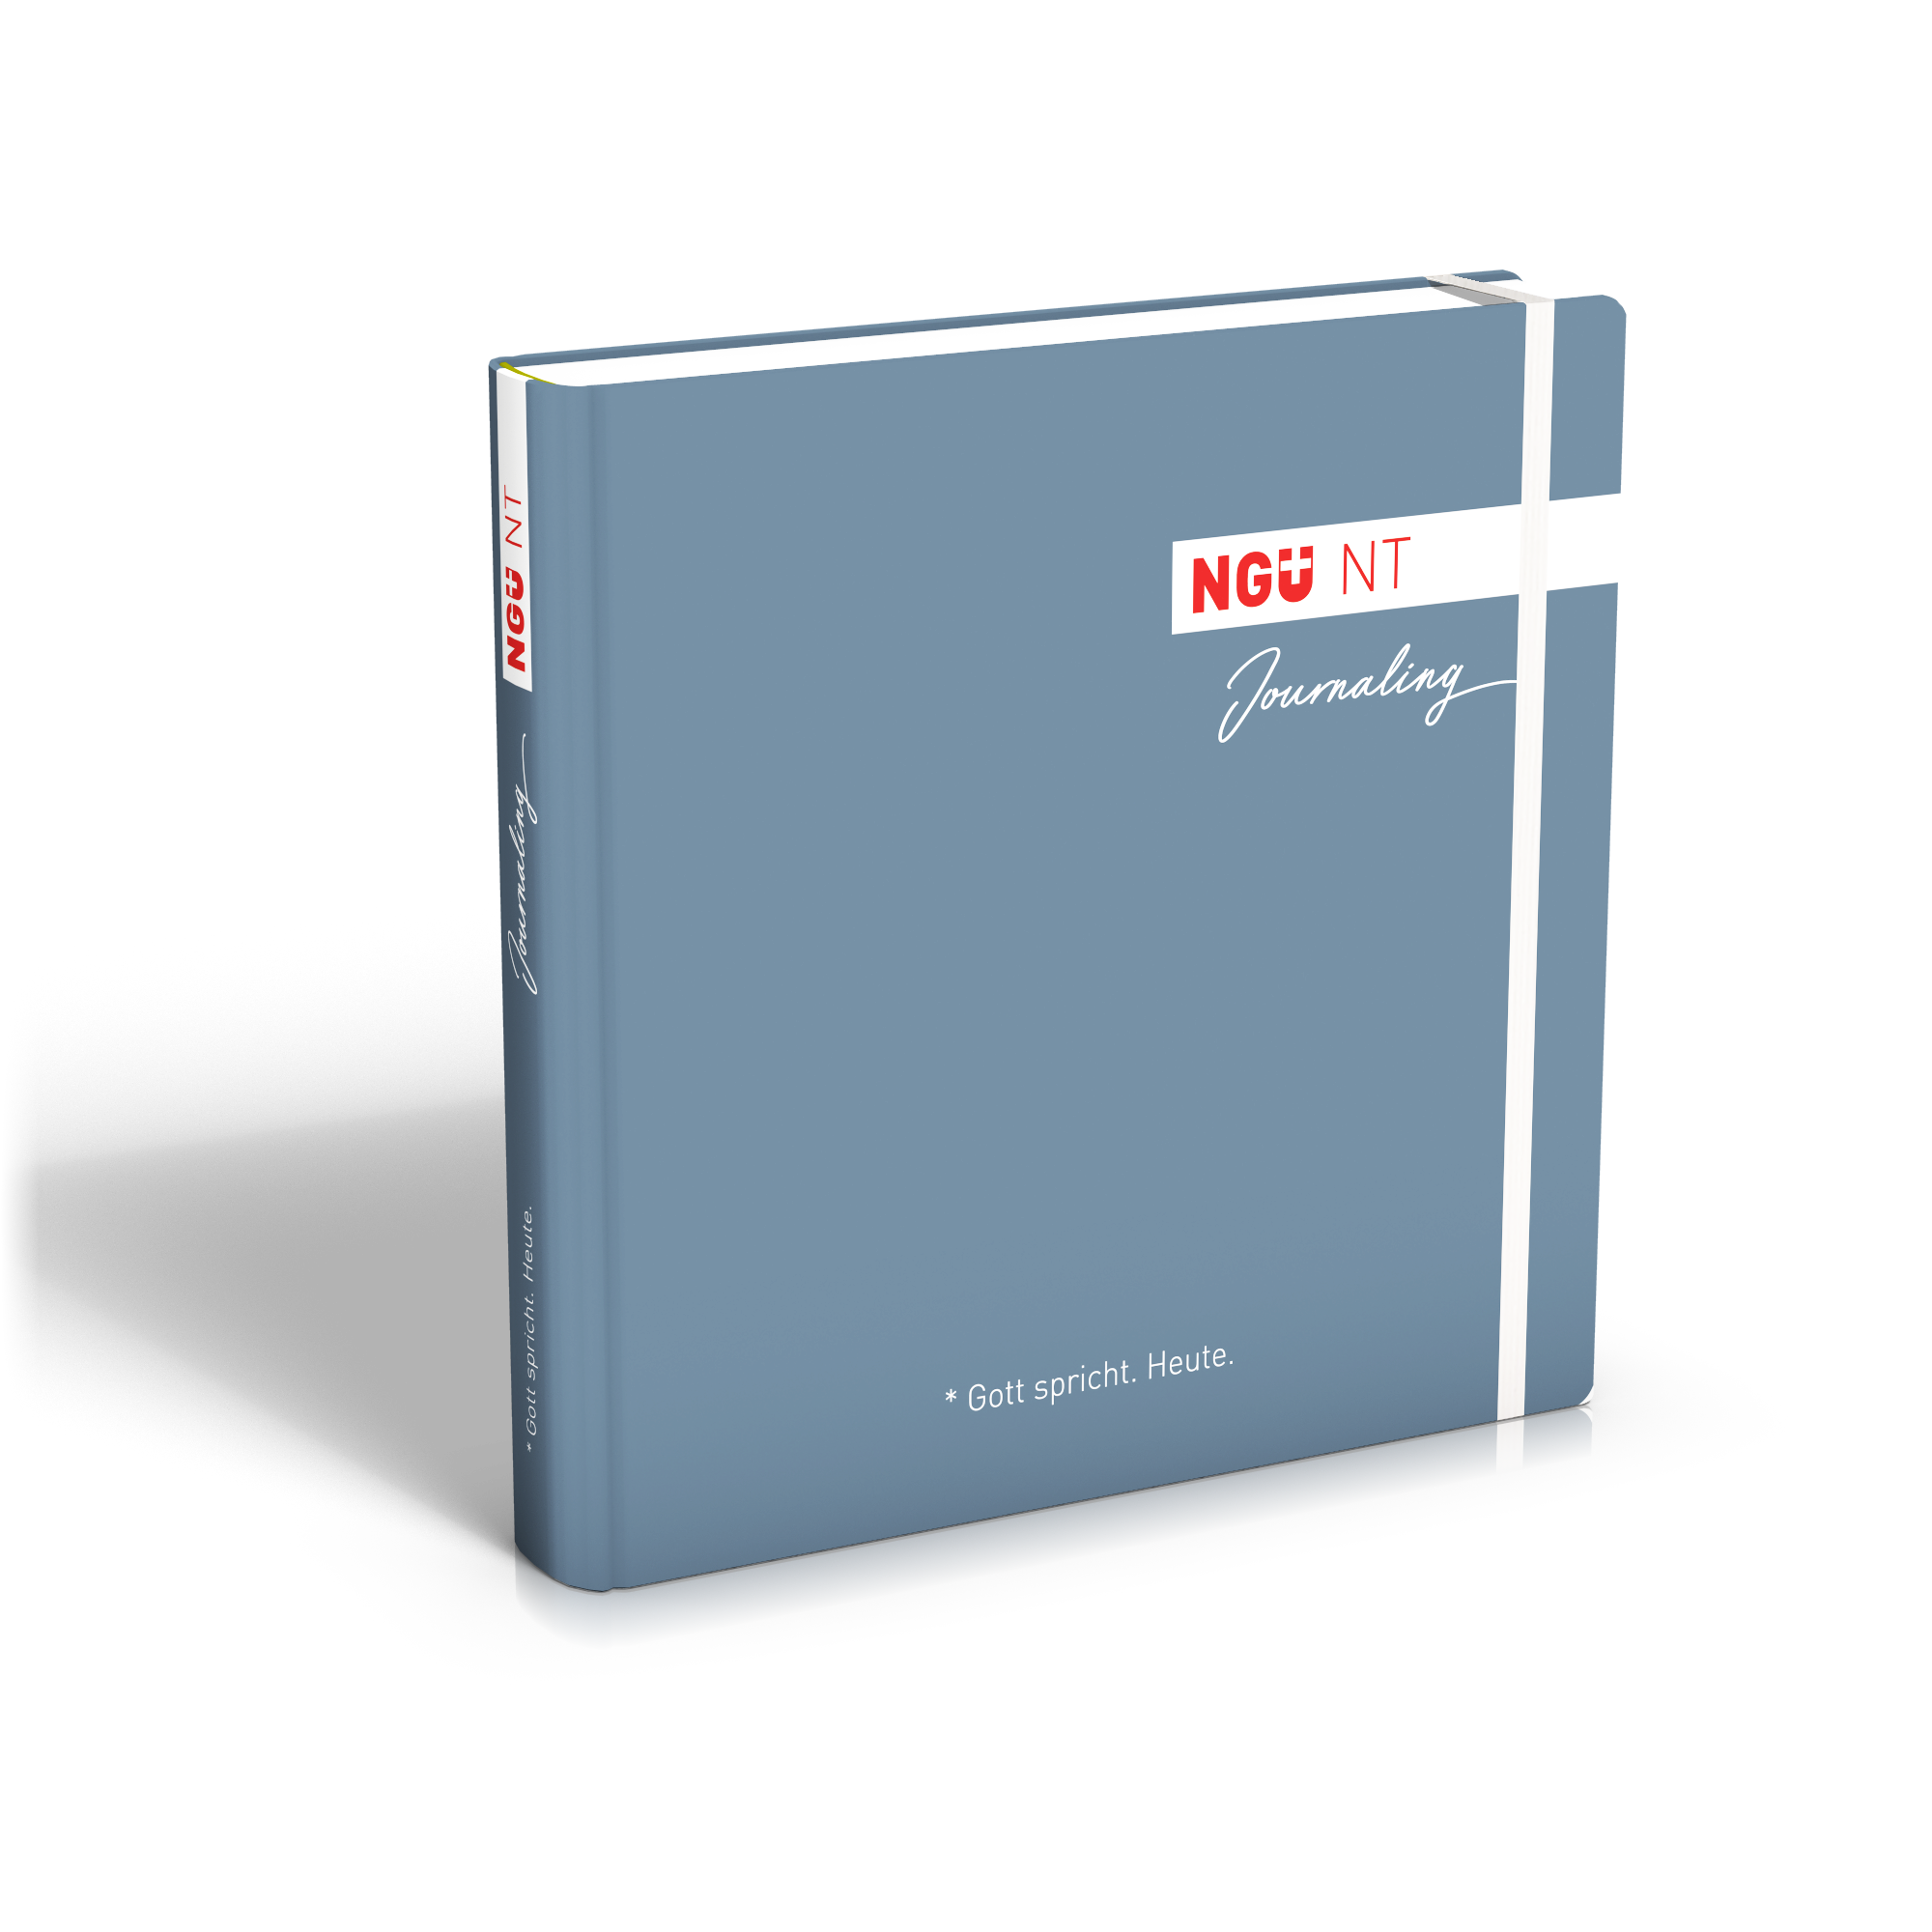 Allemand, NGÜ Nouveau Testament - Edition journaling, relié bleu avec élastique